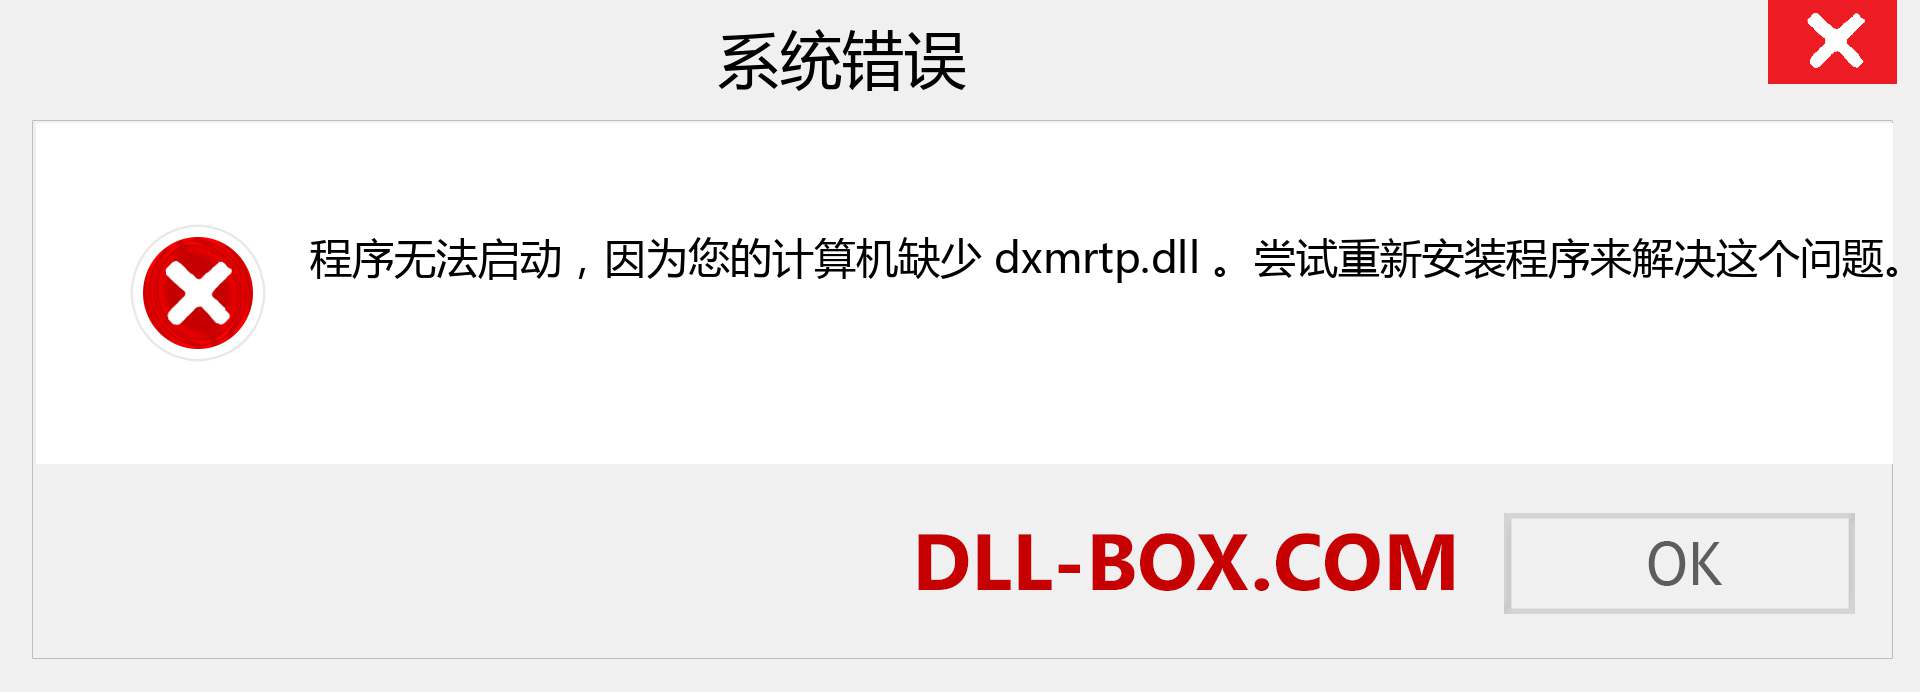 dxmrtp.dll 文件丢失？。 适用于 Windows 7、8、10 的下载 - 修复 Windows、照片、图像上的 dxmrtp dll 丢失错误